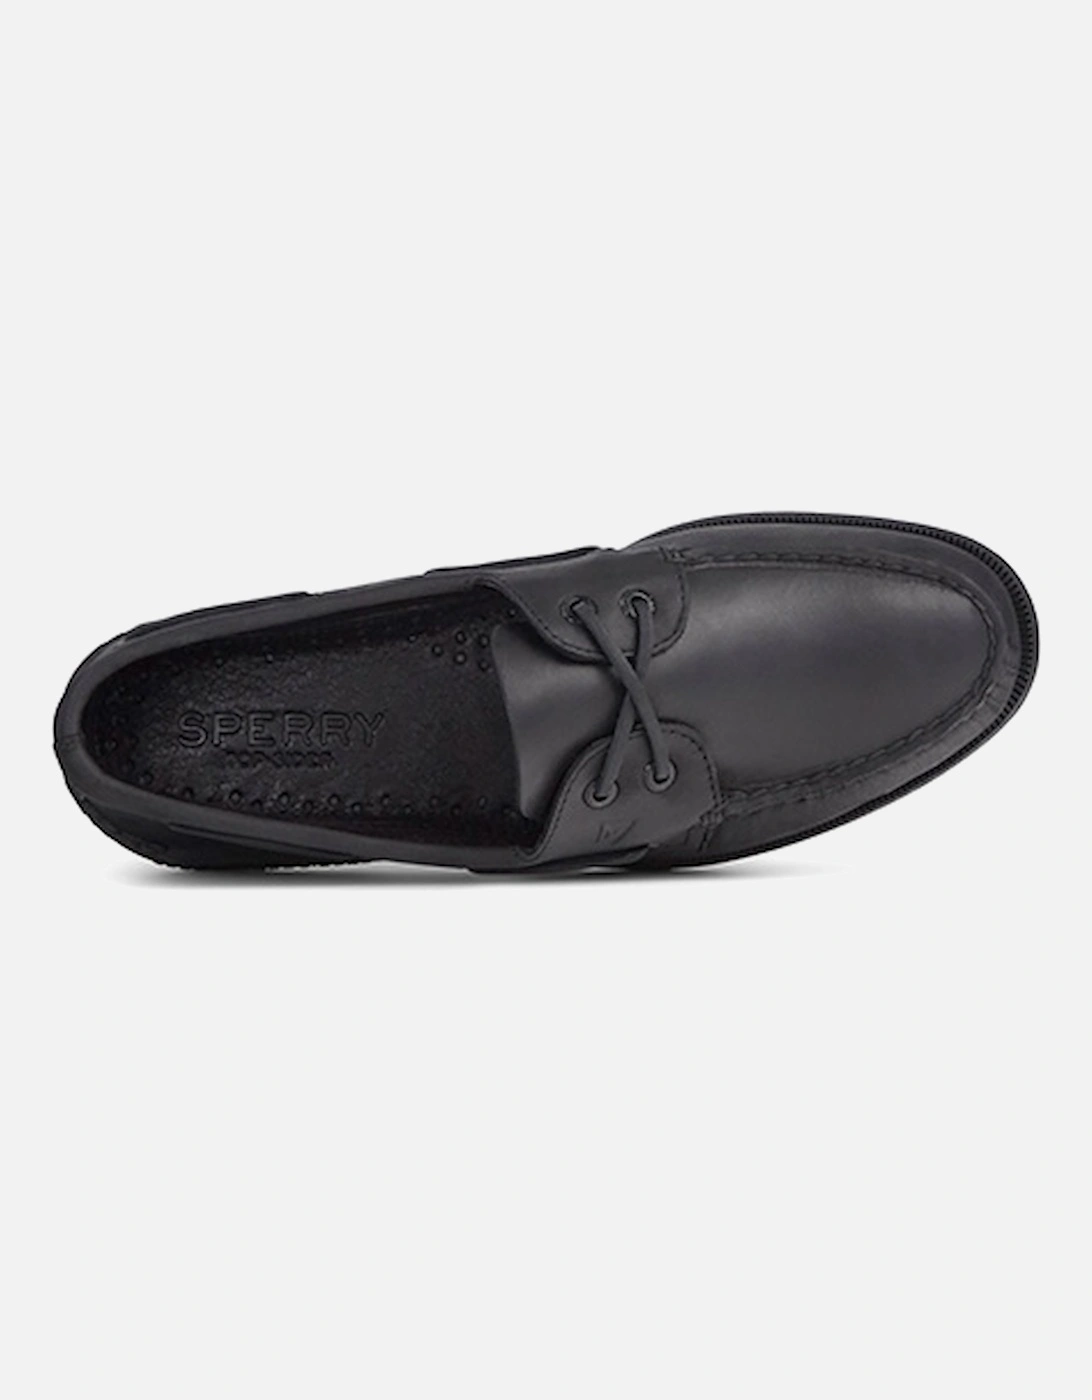 Sperry Men's Authentic Original Leather Boat Shoe Black DFS